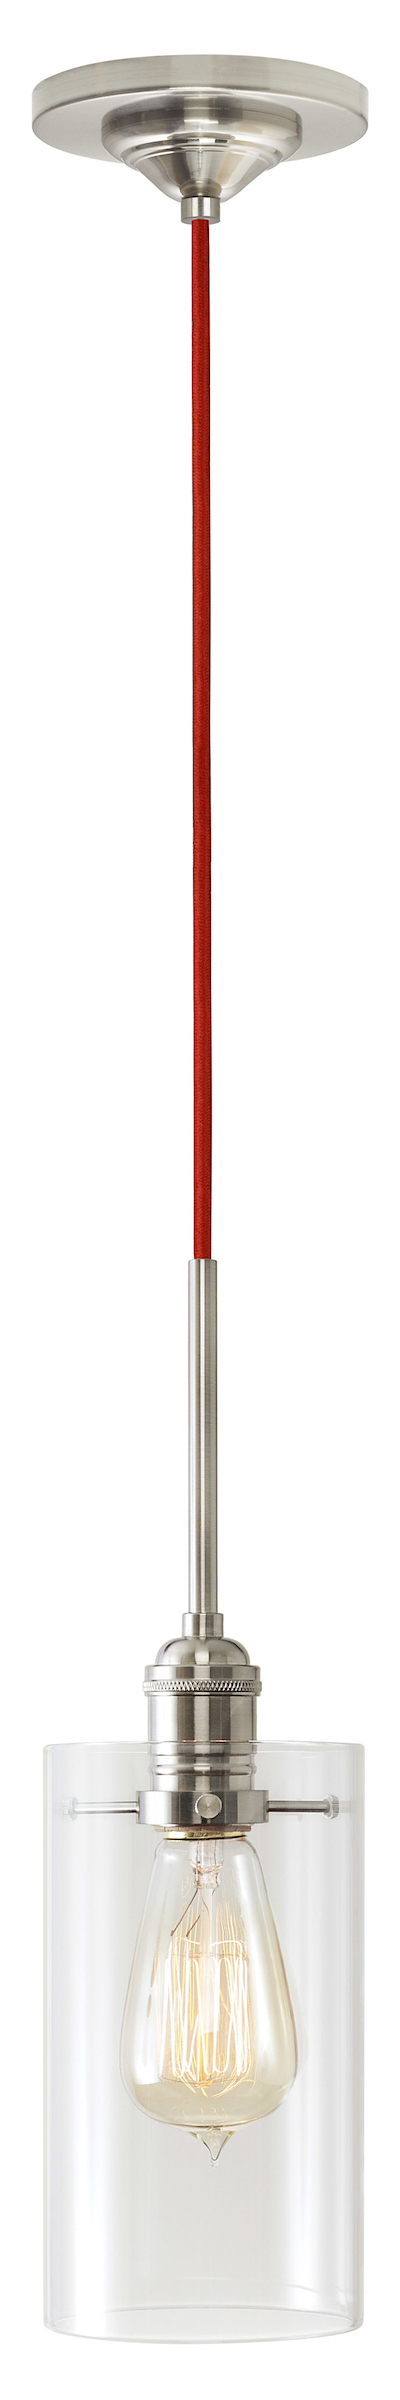 Pendant Retro Cylinder II Amber Glass PN E26 Retro 60W Red Cord